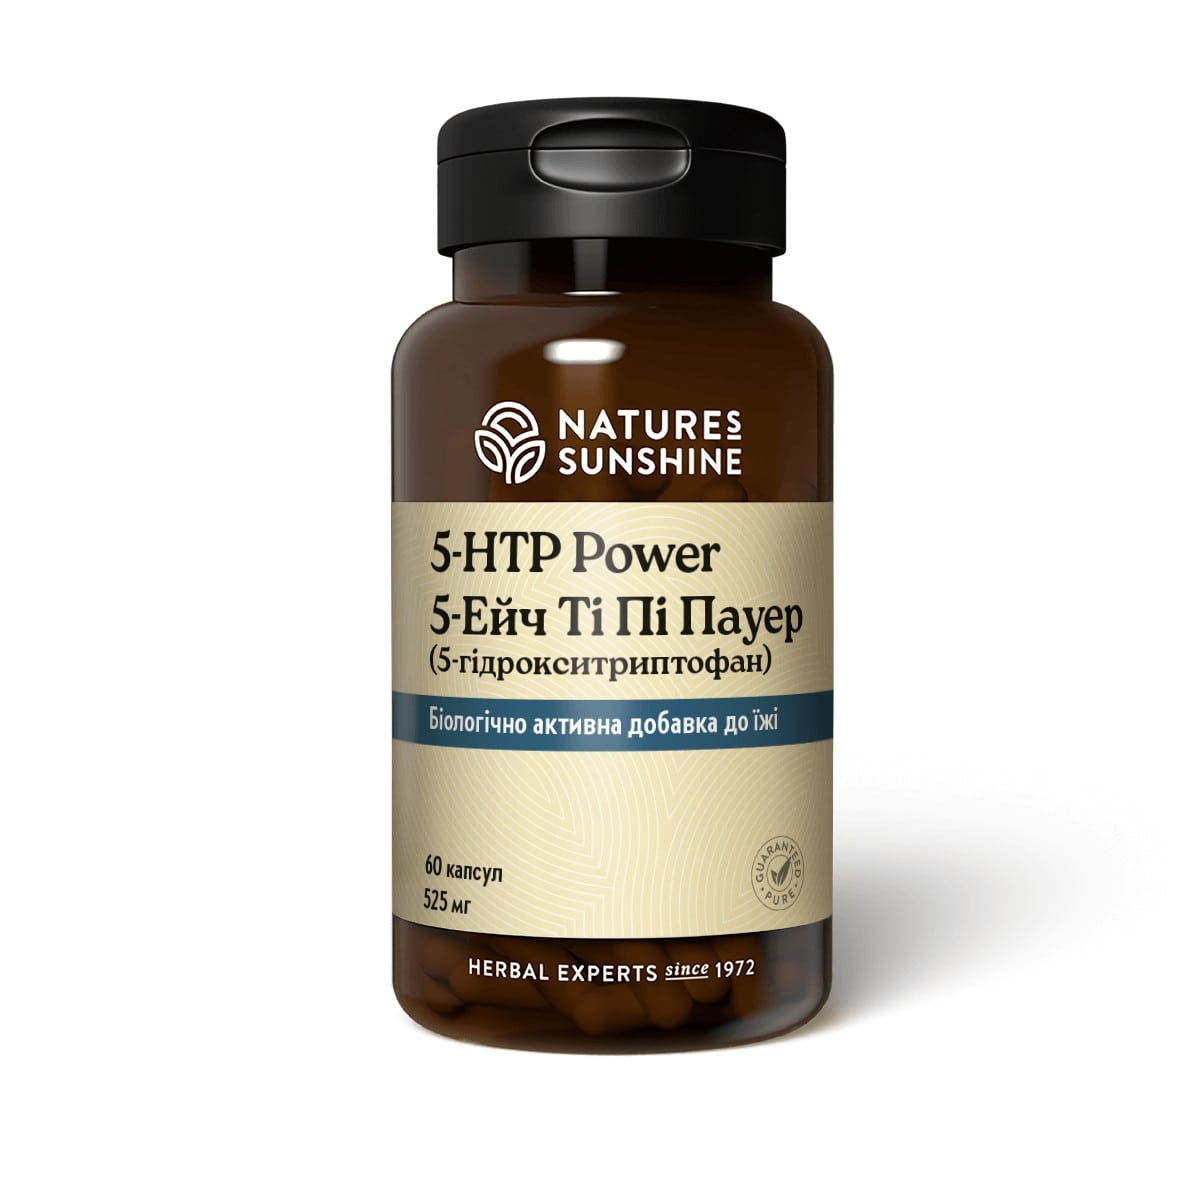 5-НТР Power - 5-гидрокситриптофан - БАД Nature's Sunshine Products (NSP)